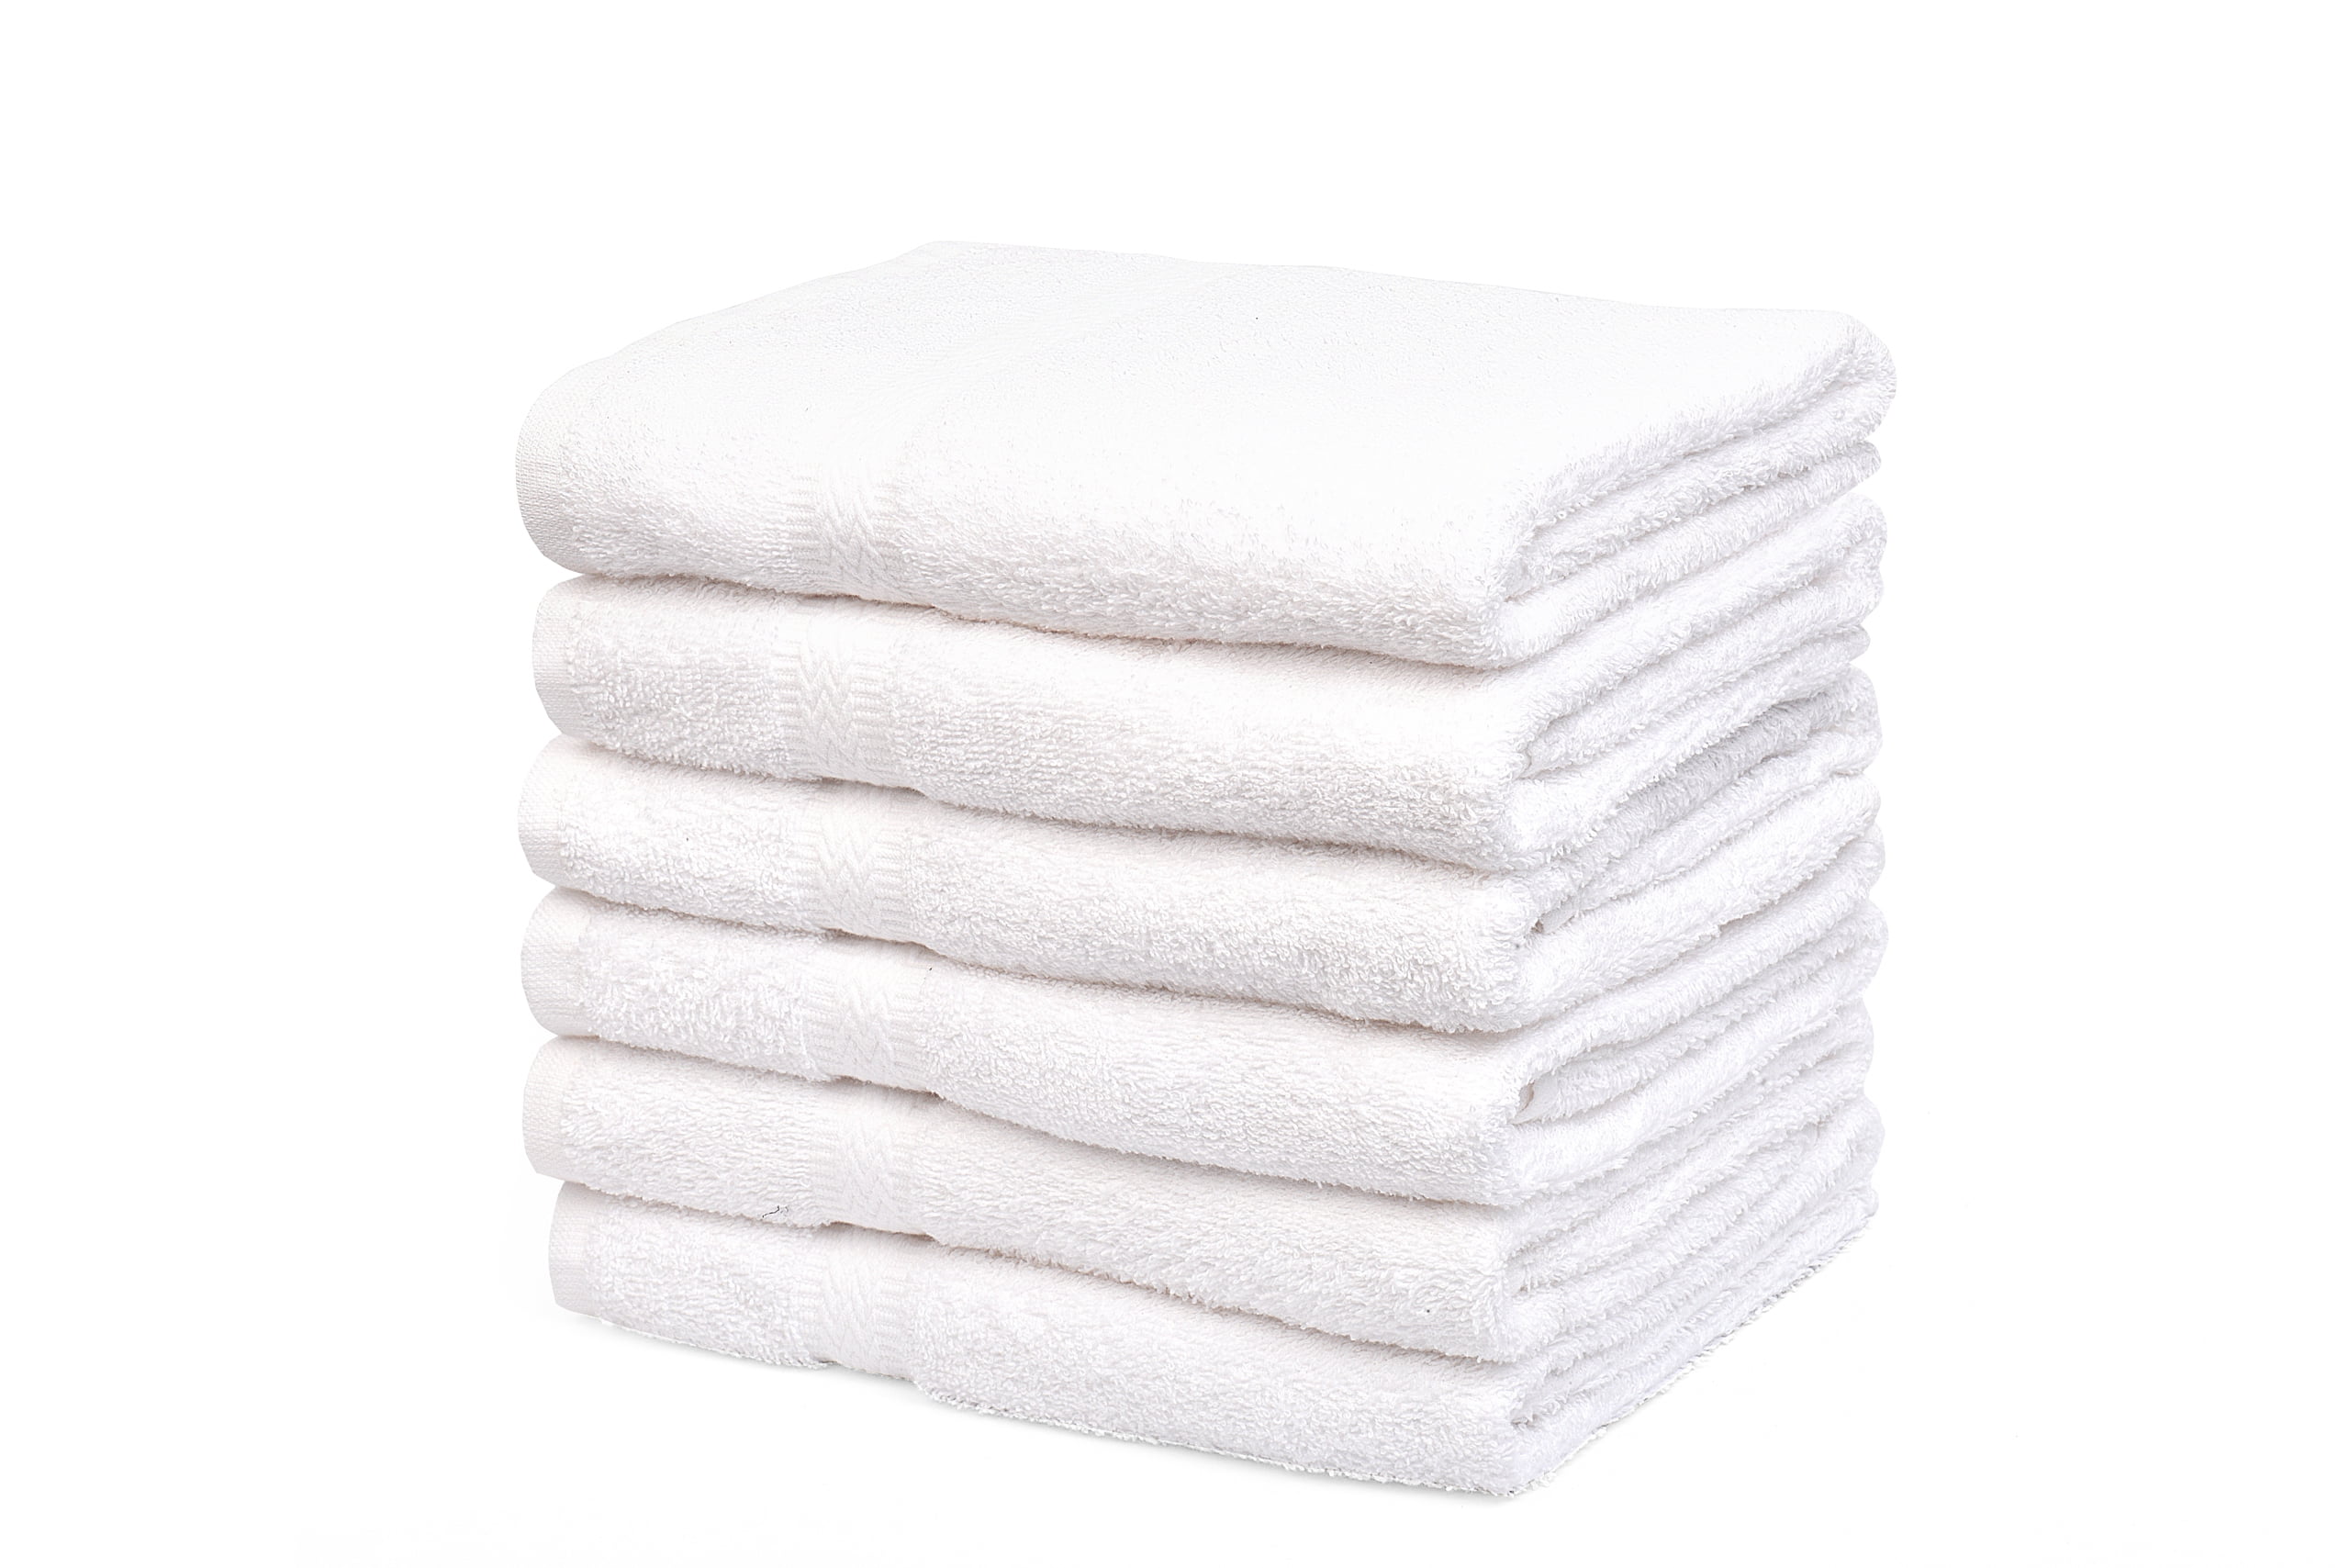 90  new white soft hair/bath towels 20x40 100% cotton wholesale lot towels 